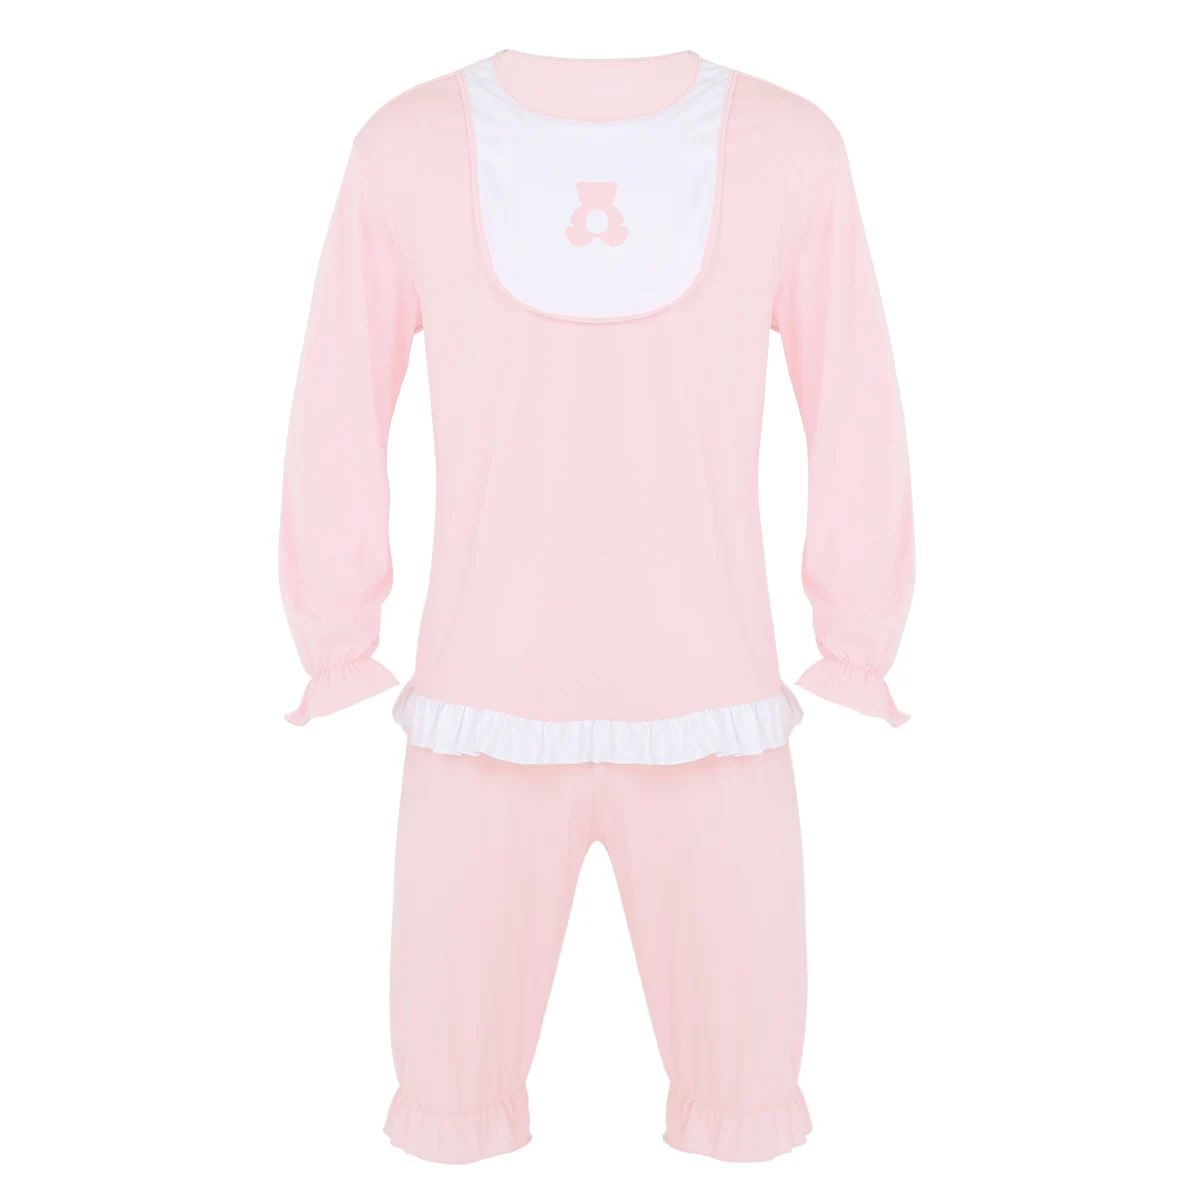 Для взрослых милое детское нарядное платье костюмы мужская пижама спортивный костюм с длинными рукавами нижнее белье наборы ночных рубашек костюм для Хеллоуина - Цвет: Light Pink